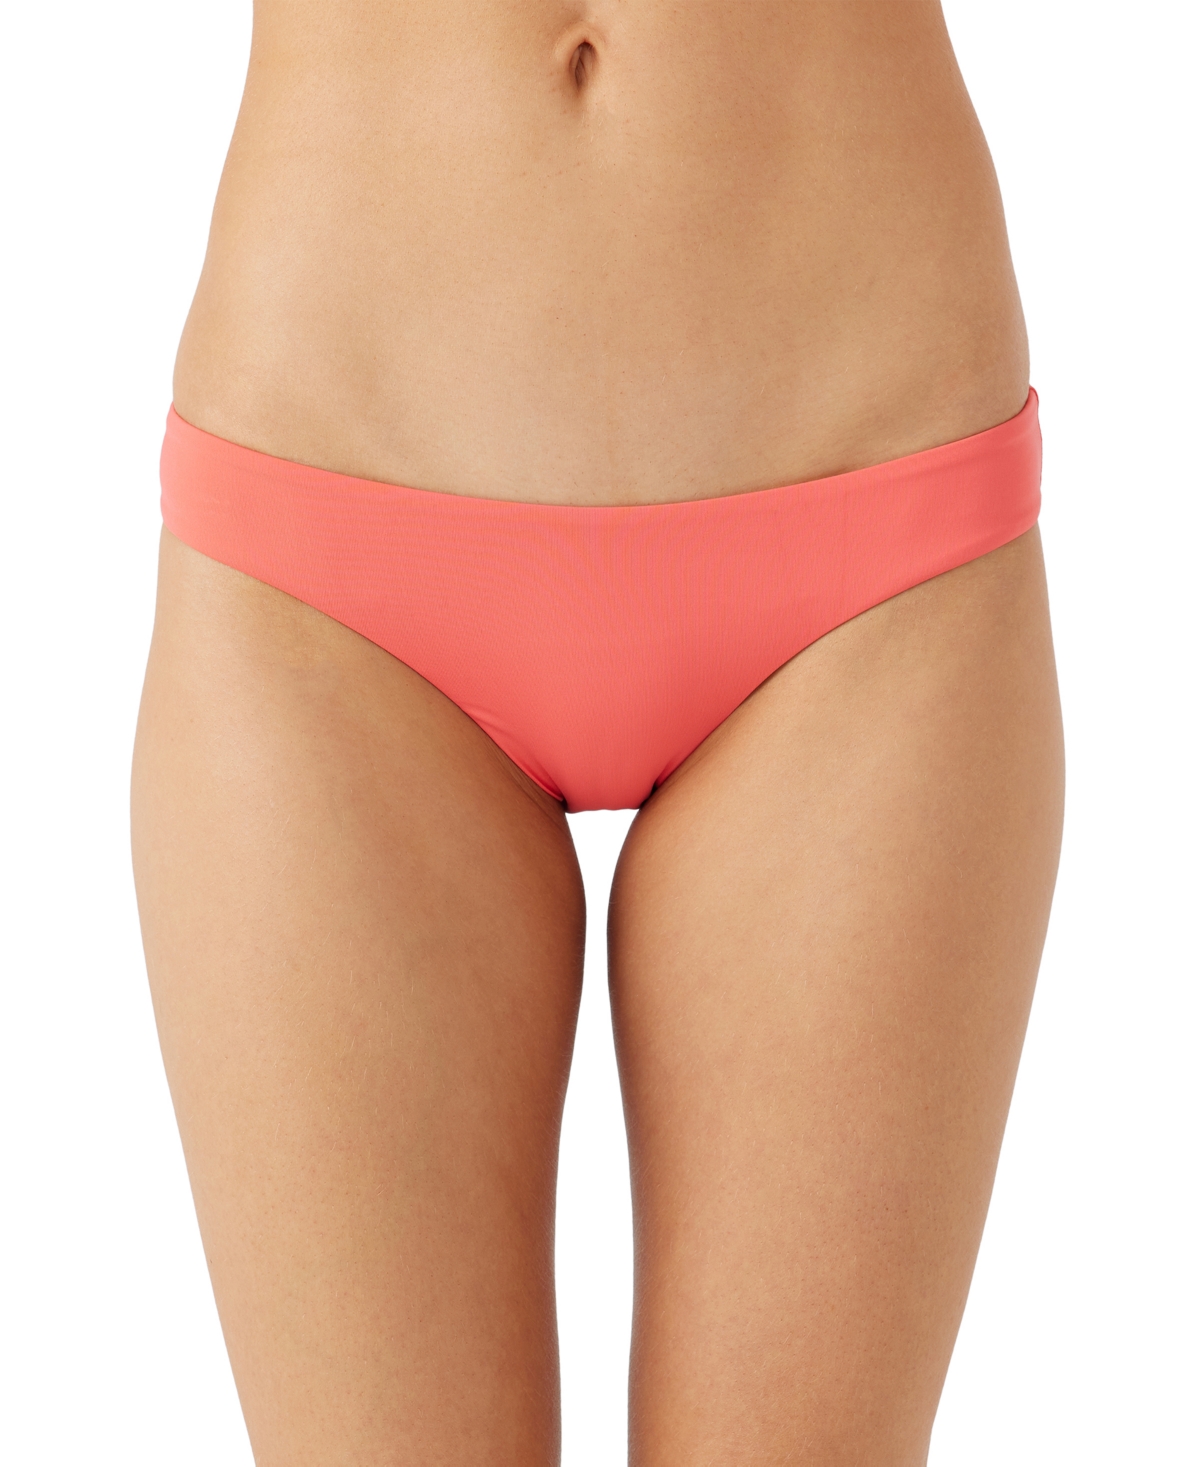 ONeill Women's Saltwater Solids Matira Bikini Bottom - Dubarry